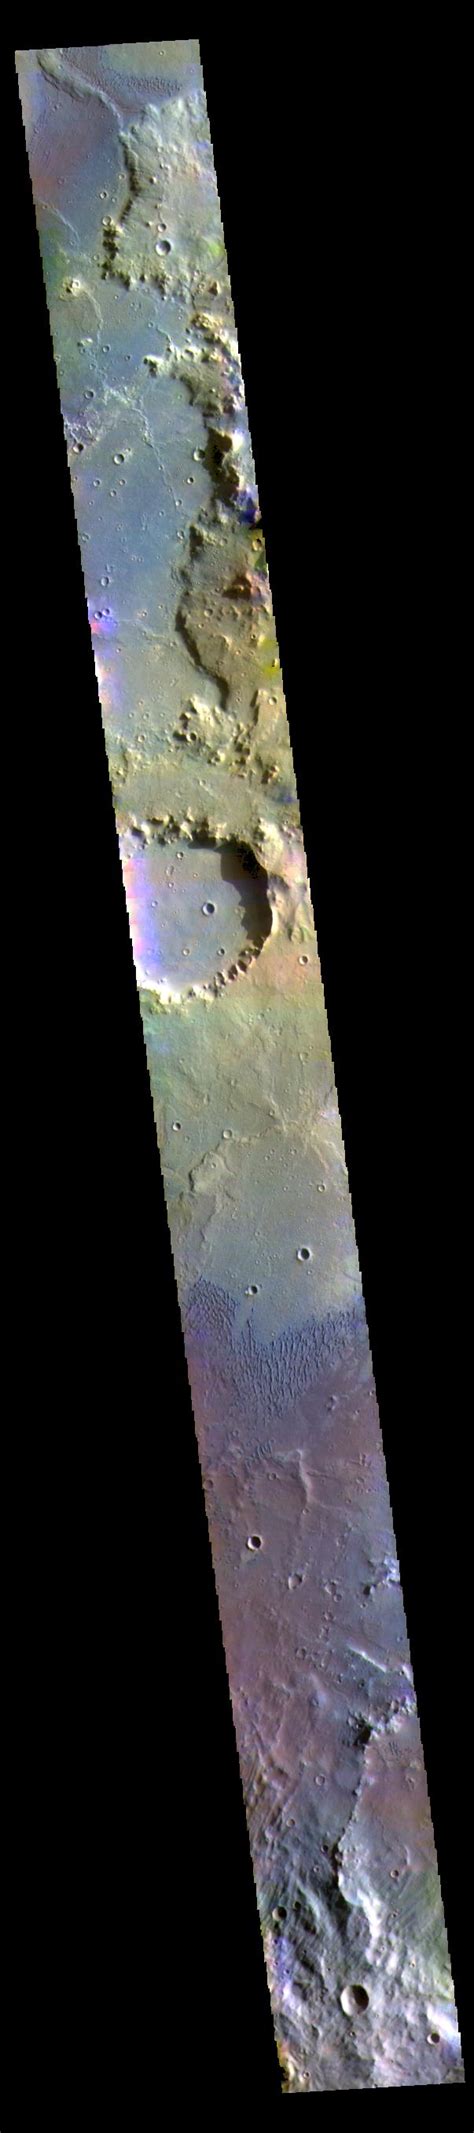 herschel crater false color nasa mars exploration